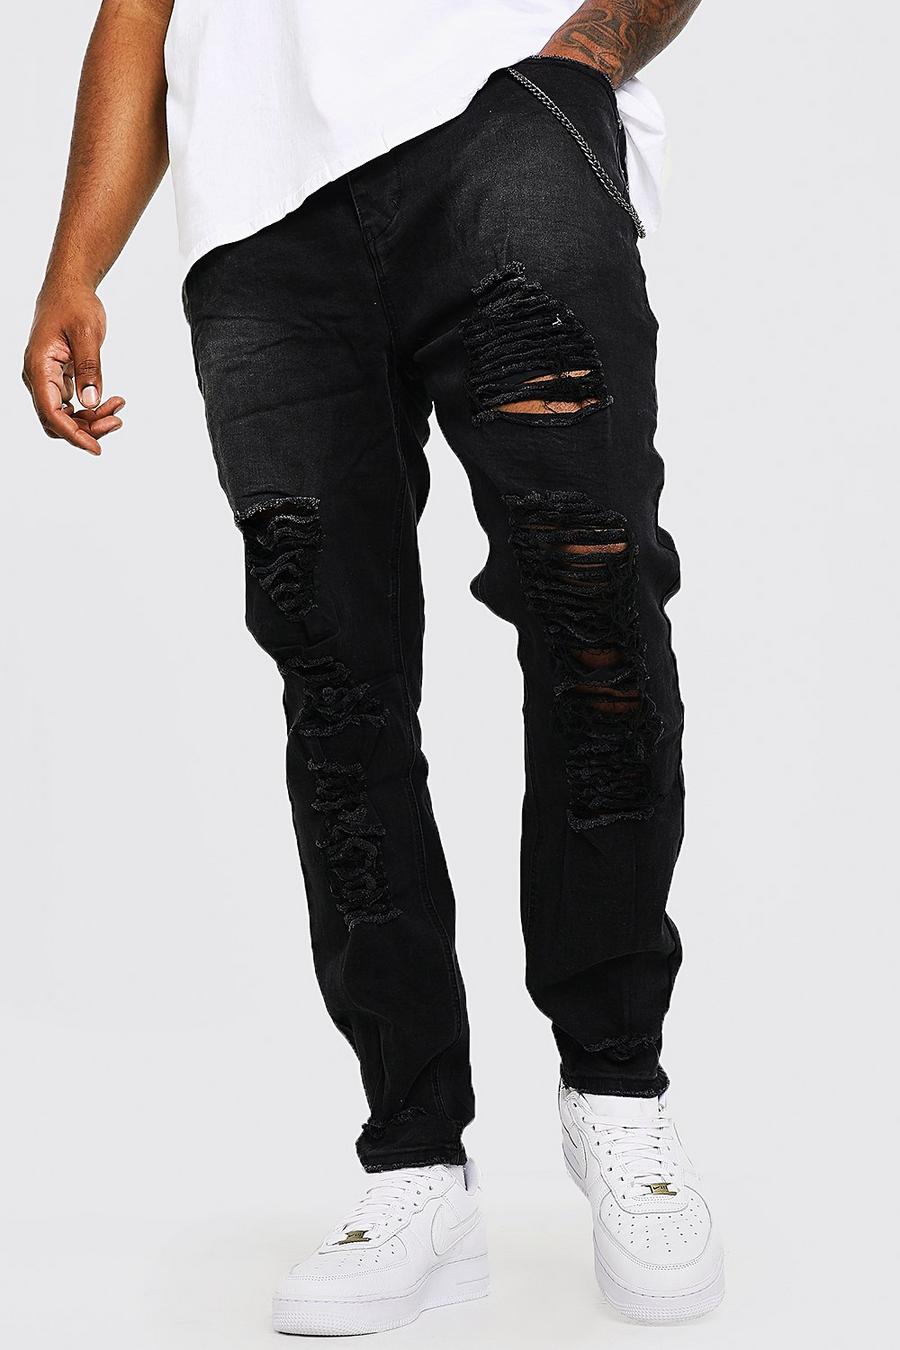 שחור סקיני ג'ינס עם קרעים לגברים גדולים וגבוהים image number 1